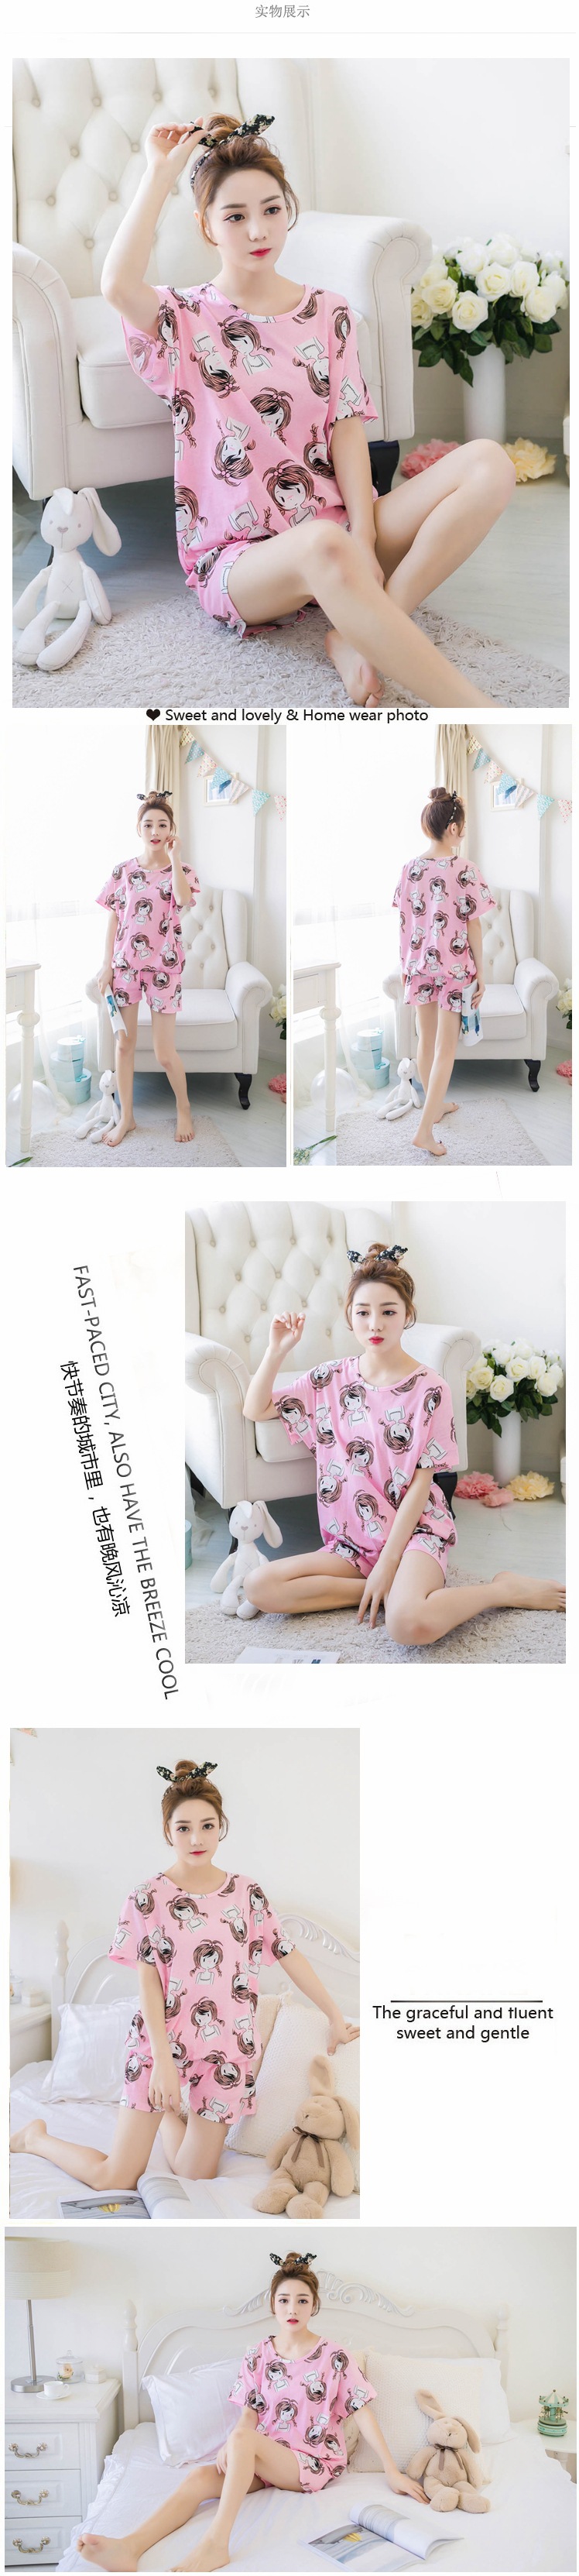 2017夏季新款韩版短袖睡衣 女夏季卡通睡衣休闲家居服套装